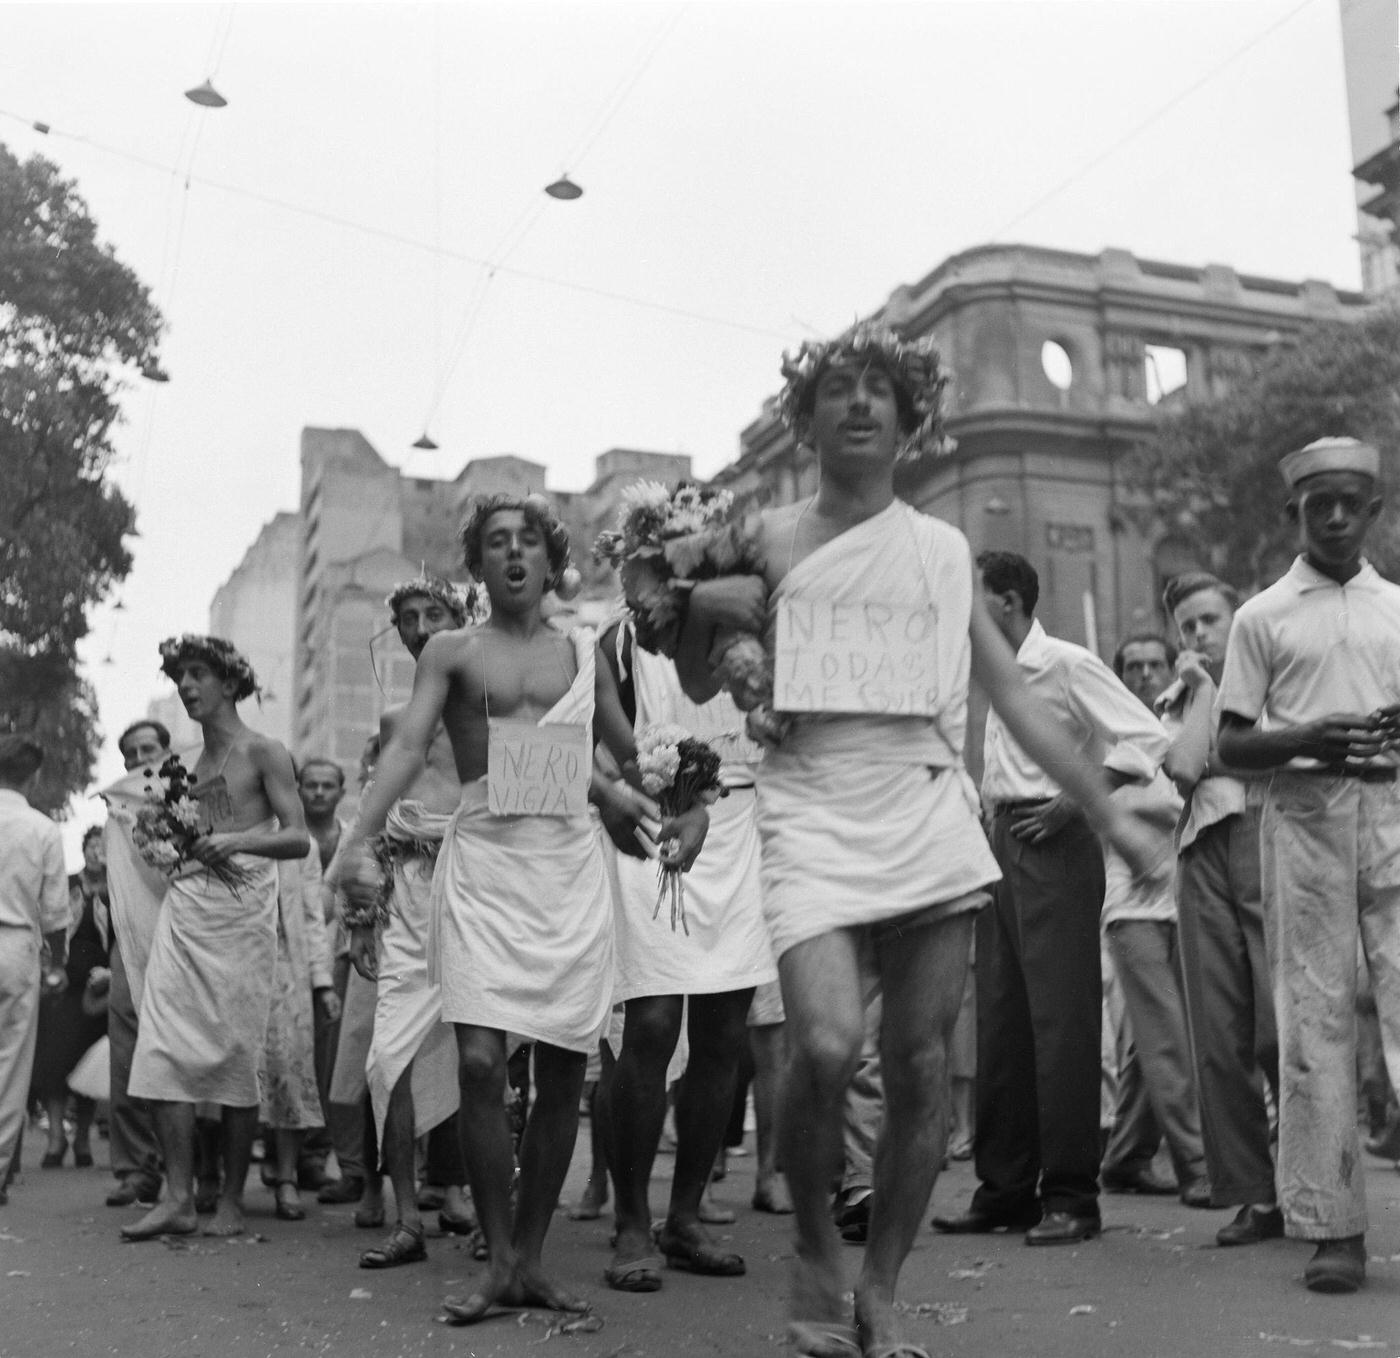 Parade Walkers, Rio Carnival 1953